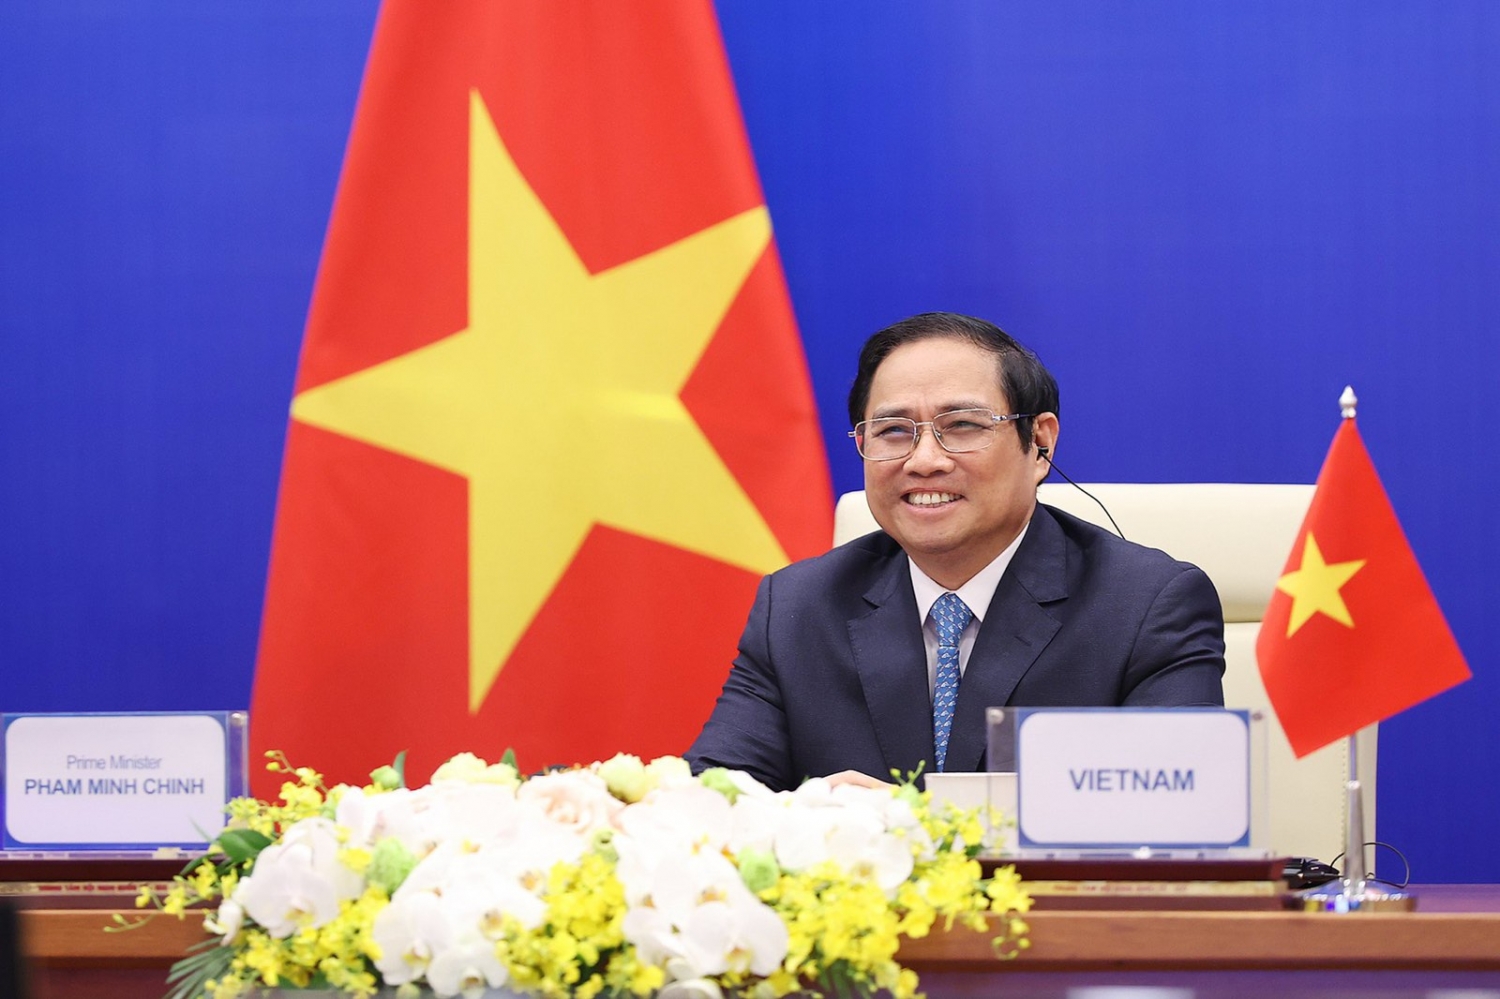 Thủ tướng Phạm Minh Chính dự và phát biểu tại Hội nghị thượng đỉnh lần thứ 4  khu vực Châu Á-Thái Bình Dương về Nước